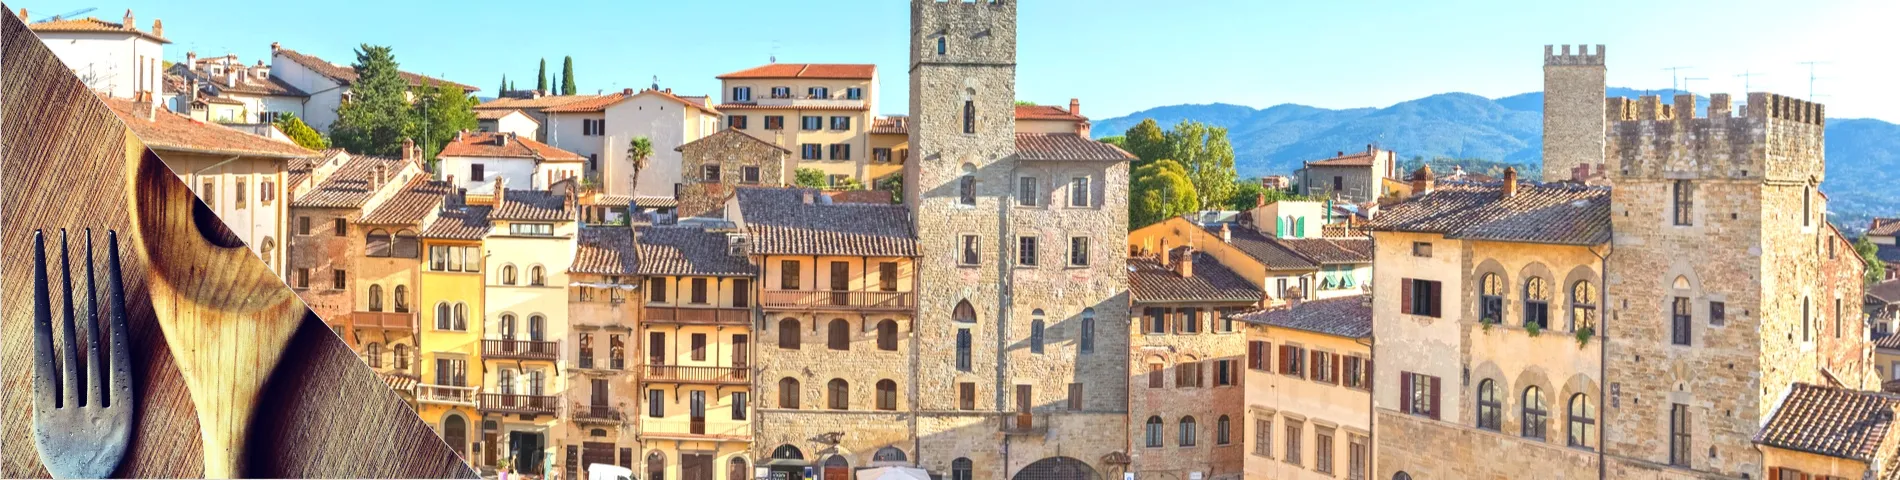 Arezzo - Italien & Cuisine